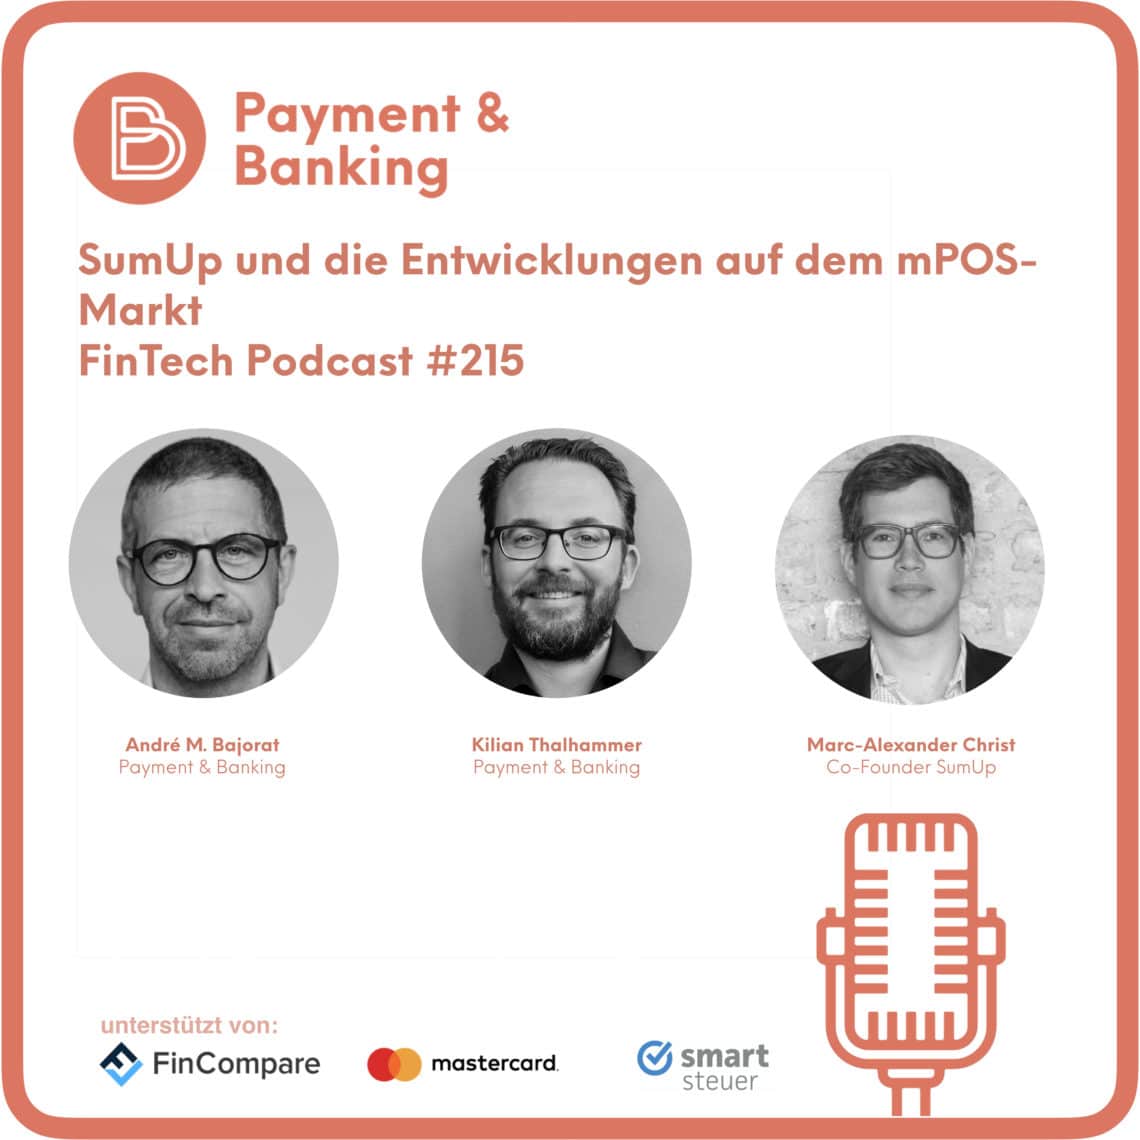 FinTech Podcast #215 - SumUp und die Entwicklungen auf dem mPOS-Markt